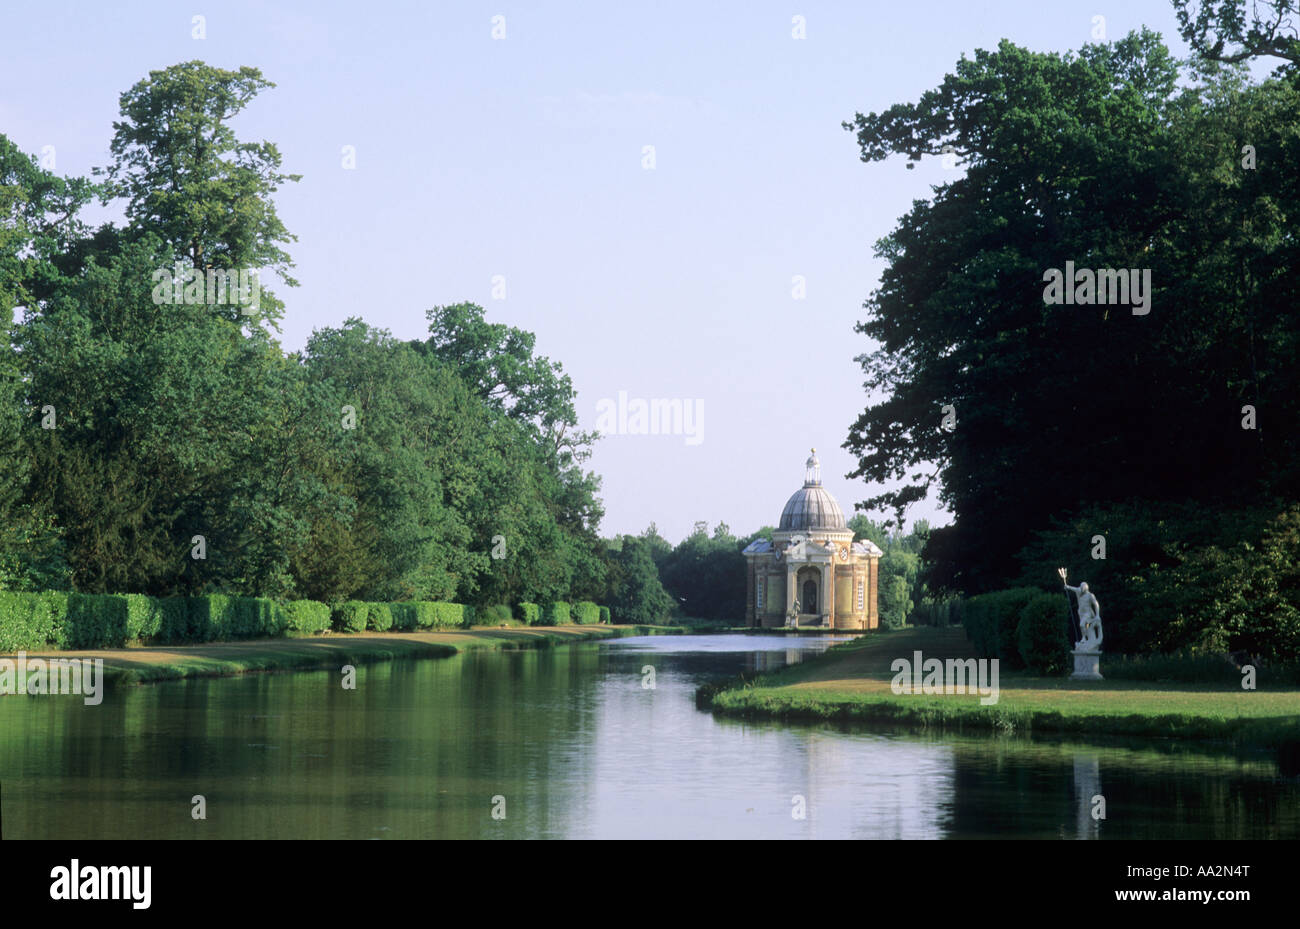 Garten-Pavillon Wrest Park Bedfordshire, England, UK, Reisen, Tourismus, Geschichte Architekt Thomas Archer 1709, Landschaftsgarten Stockfoto